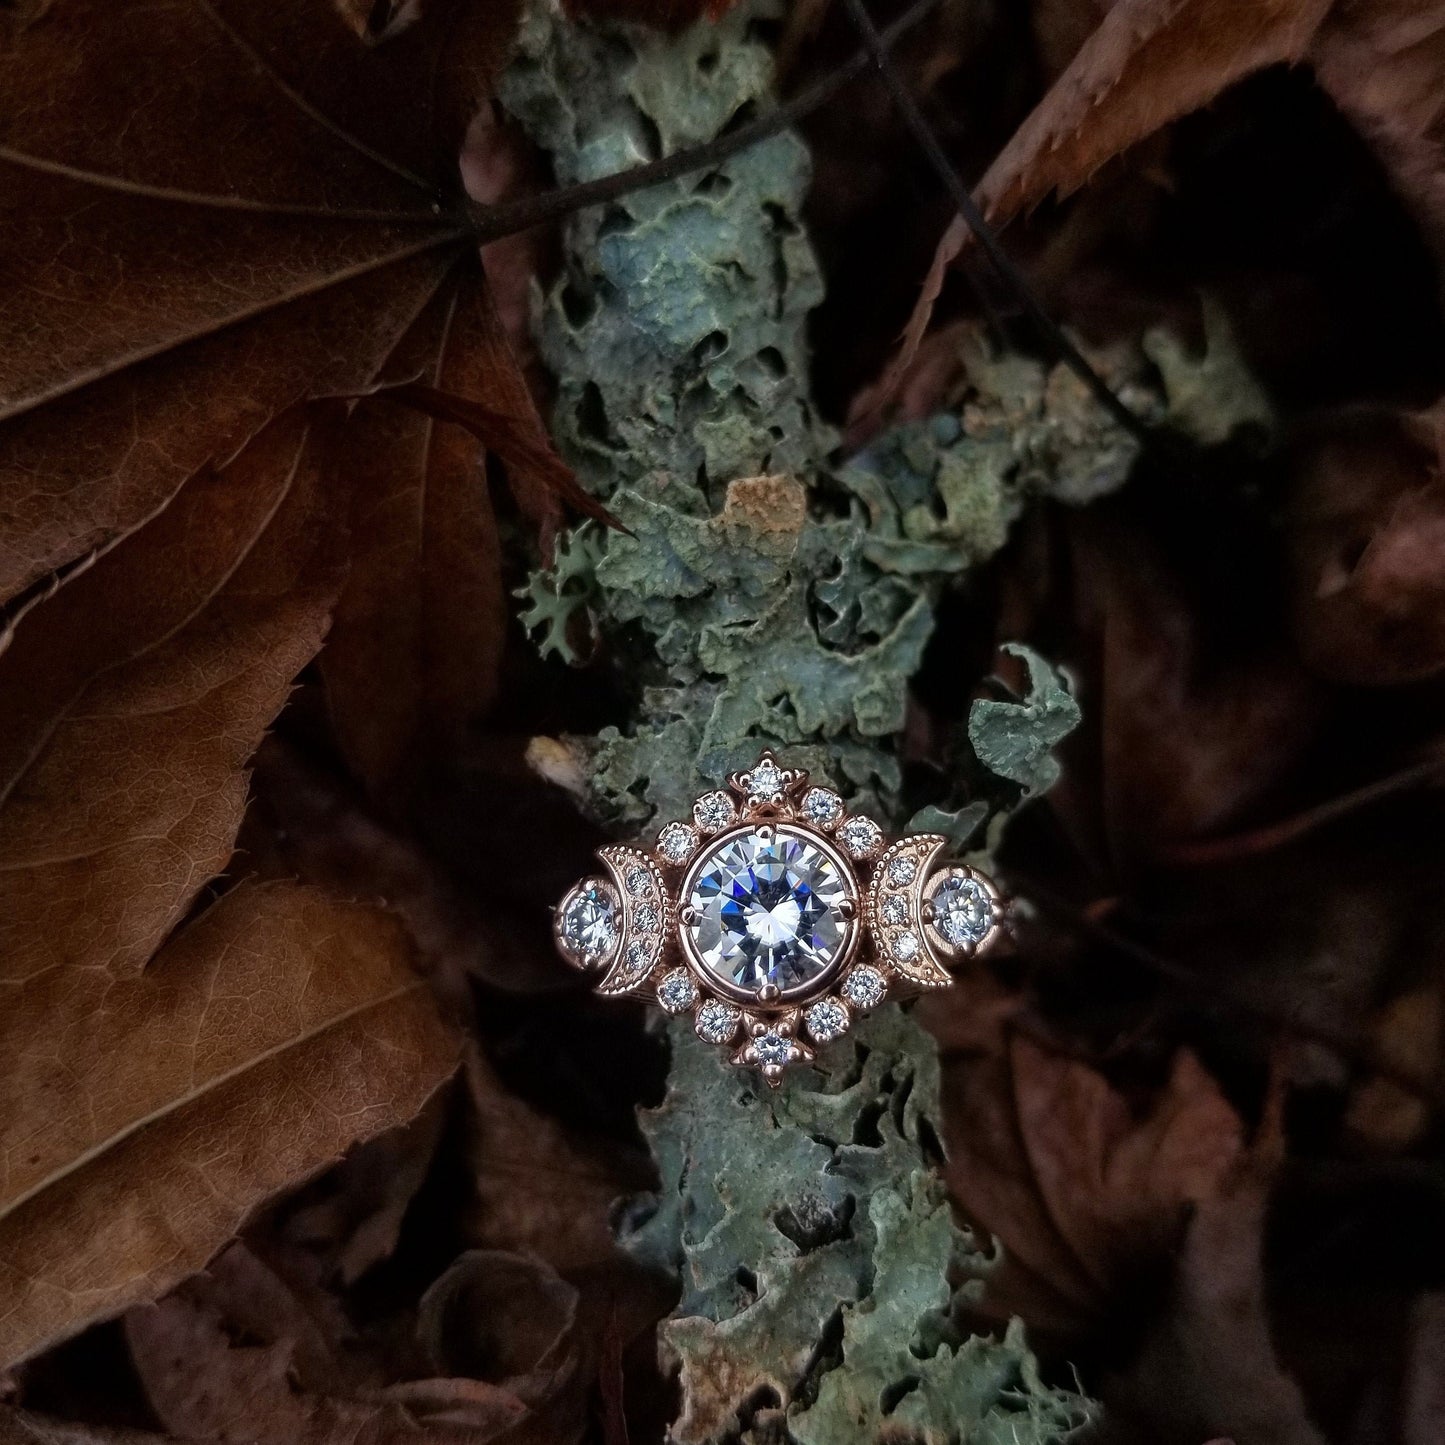 Selene Triple Moon Goddess Engagement Ring - Moissanite or Galaxy Diamond Lunar Boho Wedding Ring -14k Rose Gold